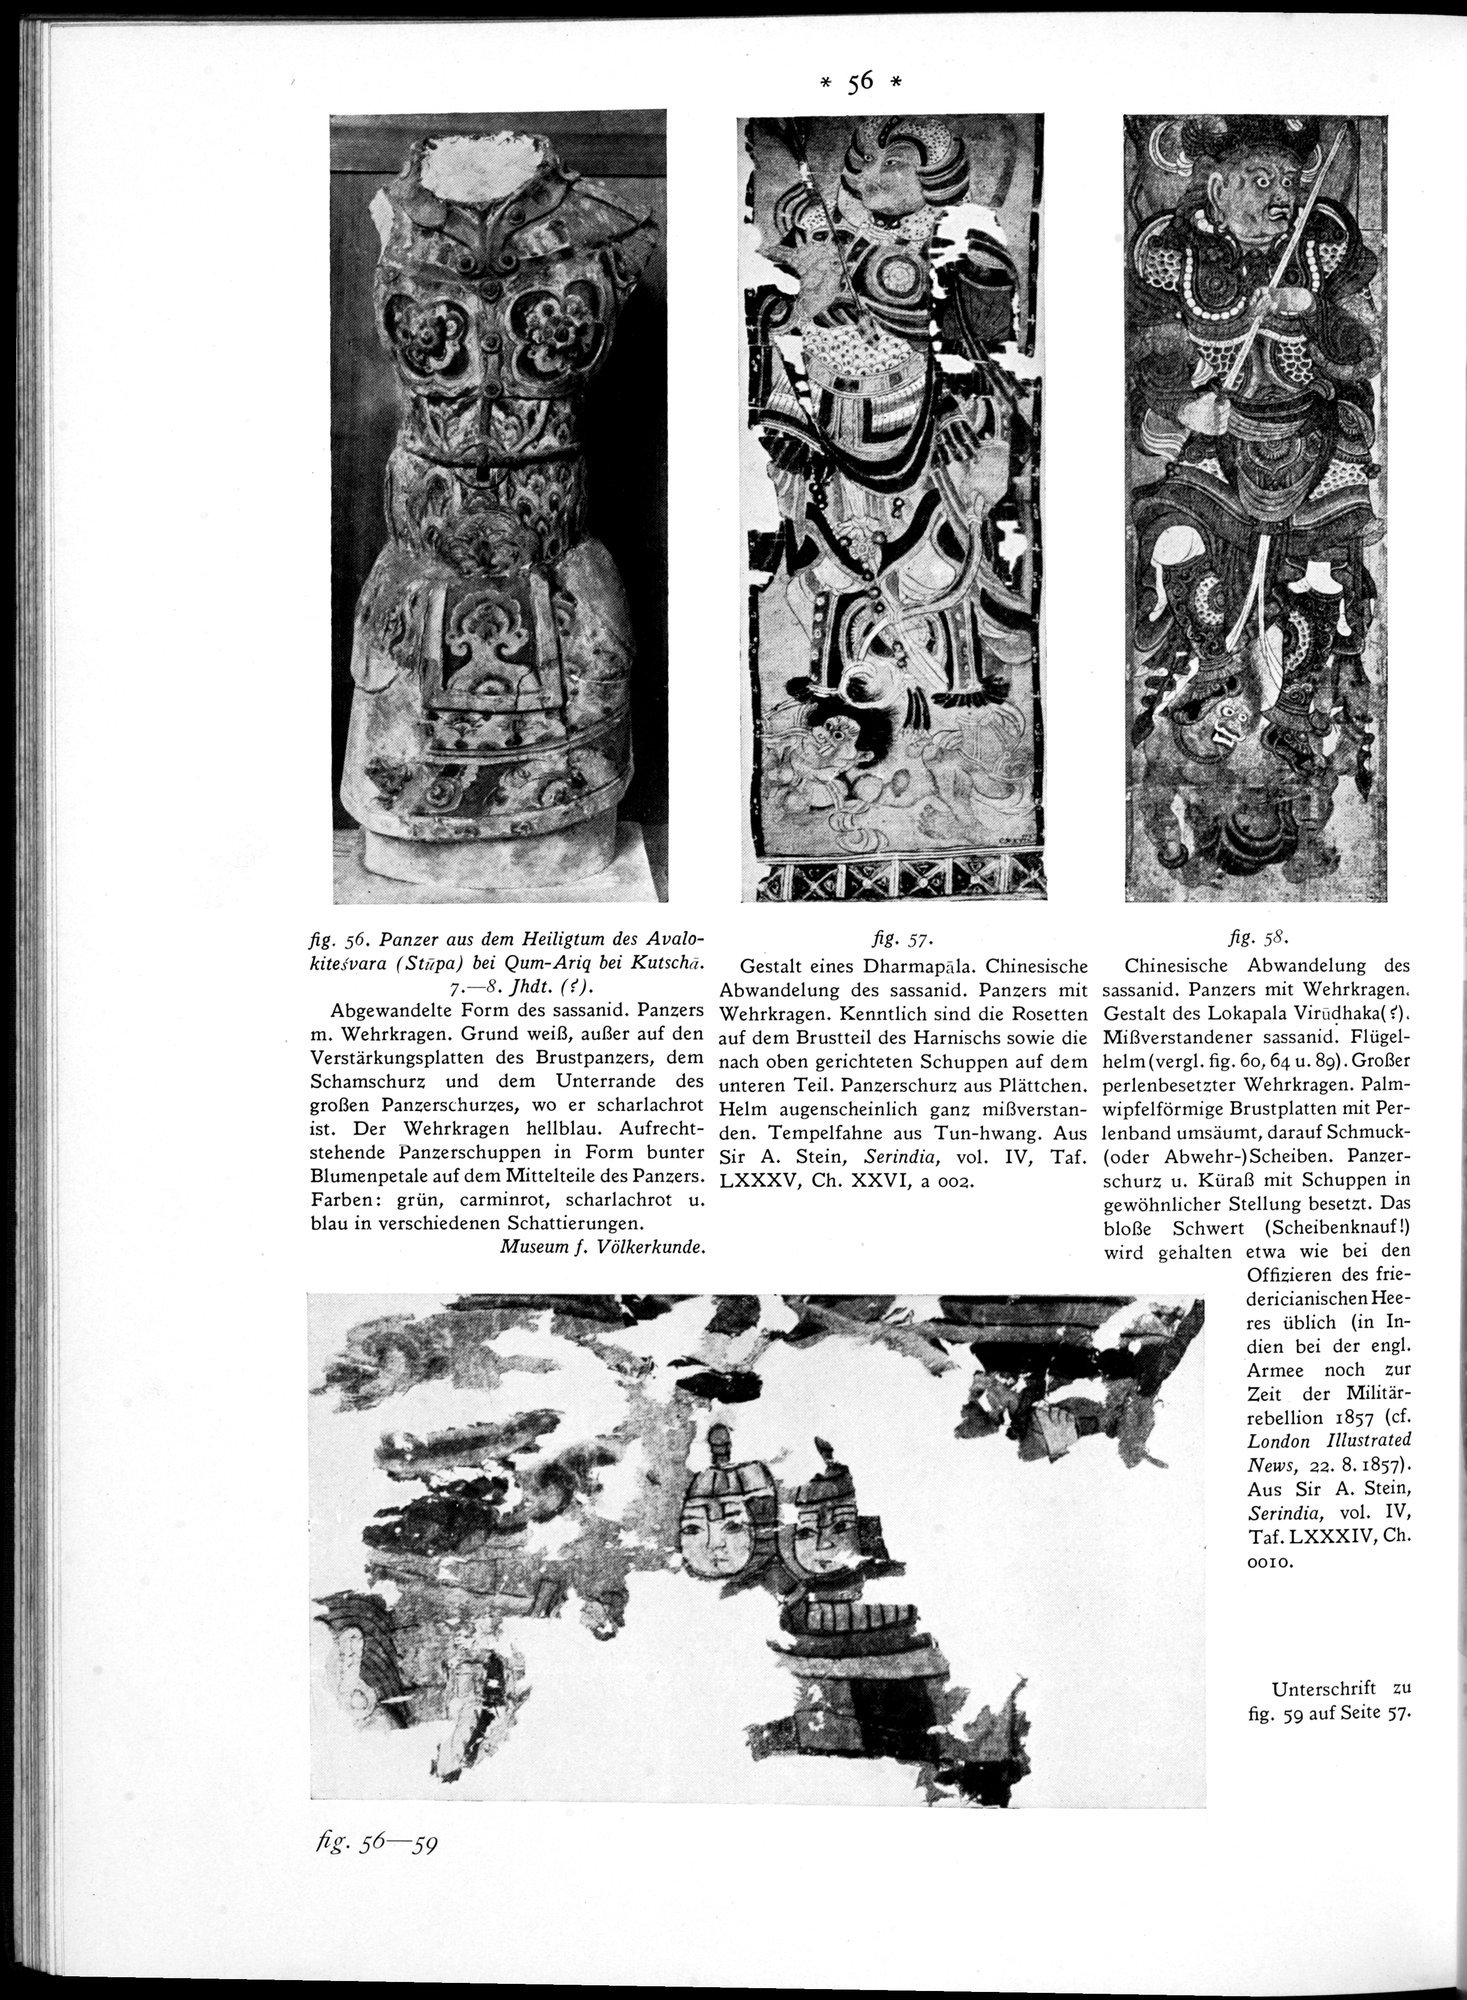 Bilderatlas zur Kunst und Kulturgeschichte Mittel-Asiens : vol.1 / Page 60 (Grayscale High Resolution Image)